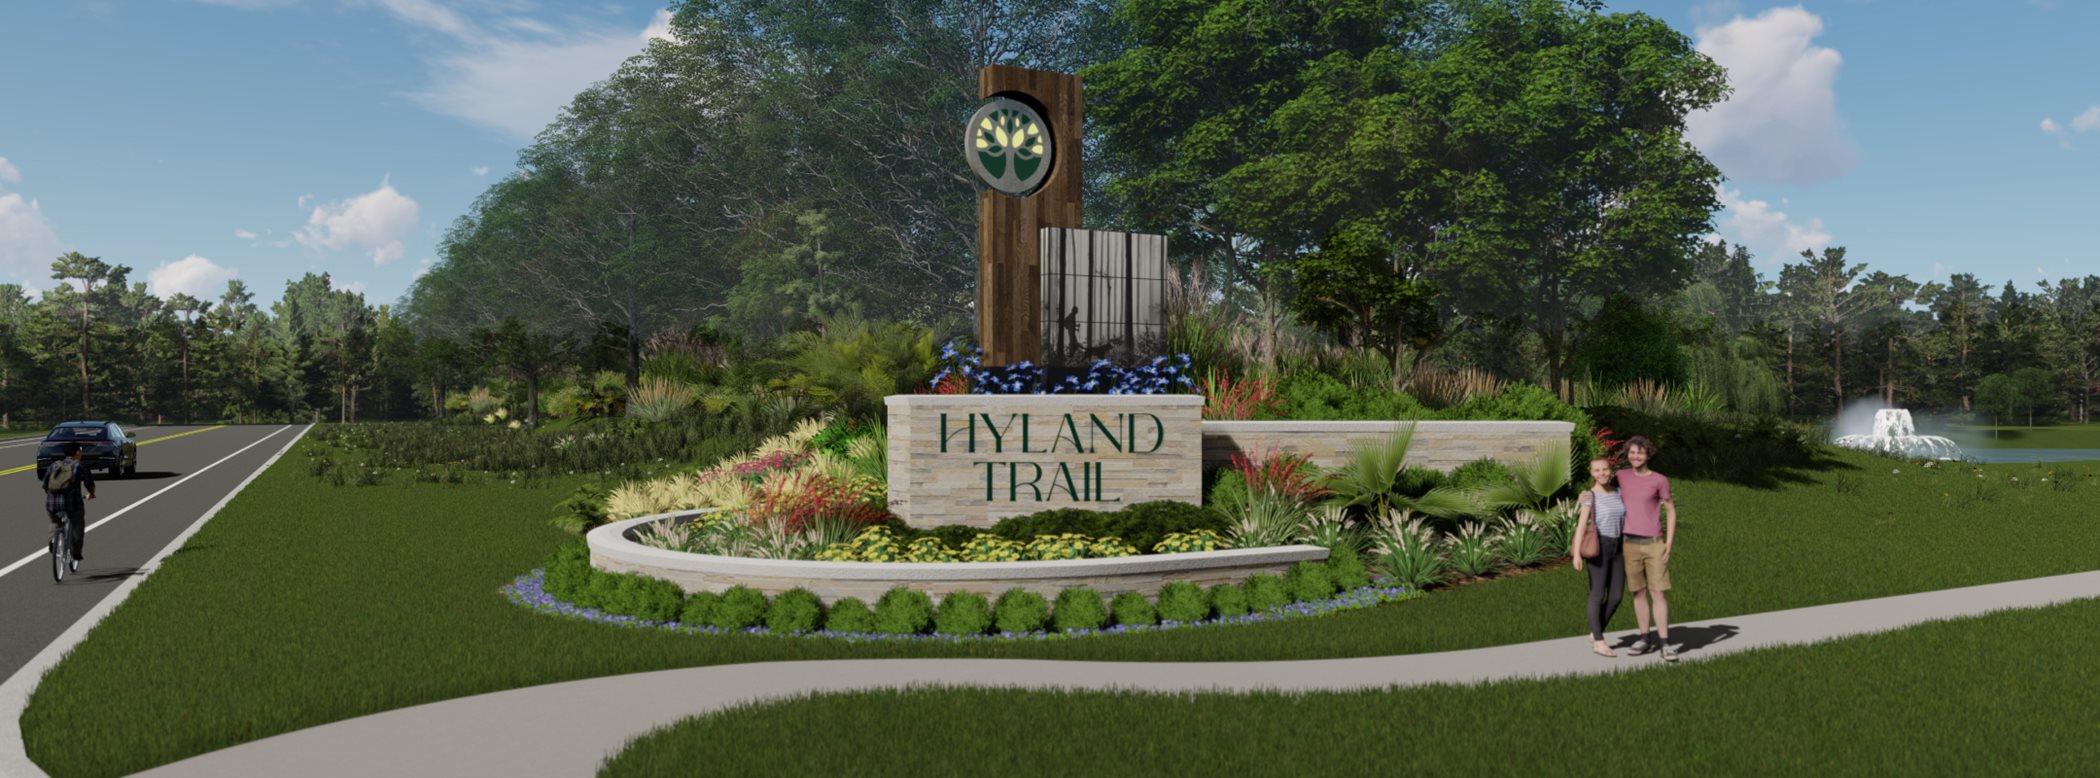 Hyland Trail community monument